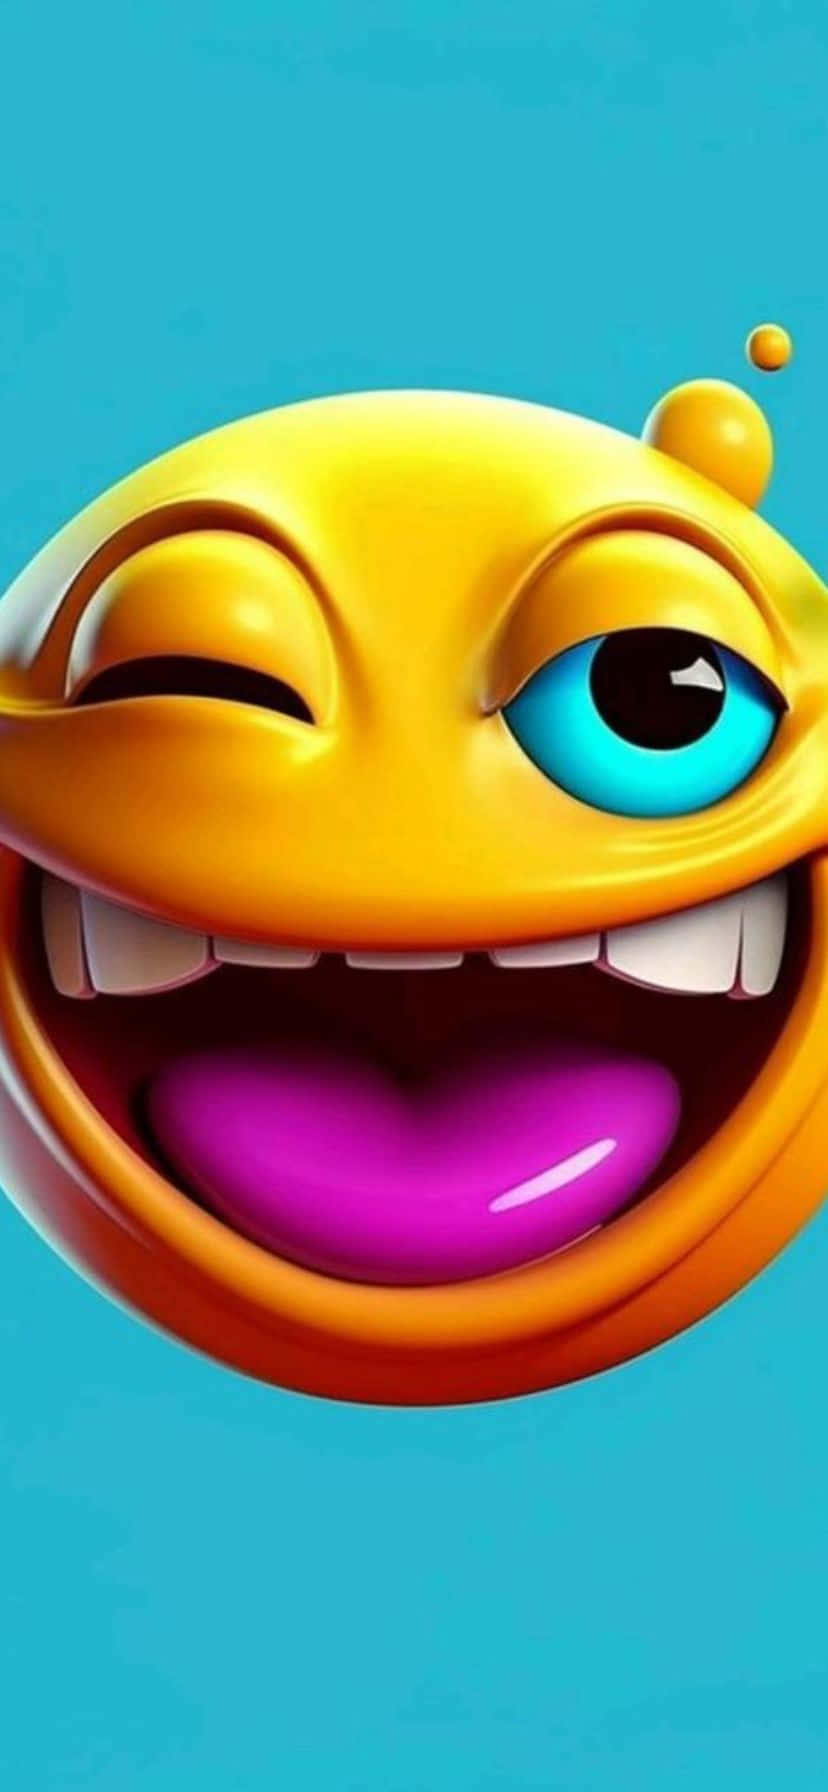 Winking Face Emoji Laughing.jpg Wallpaper